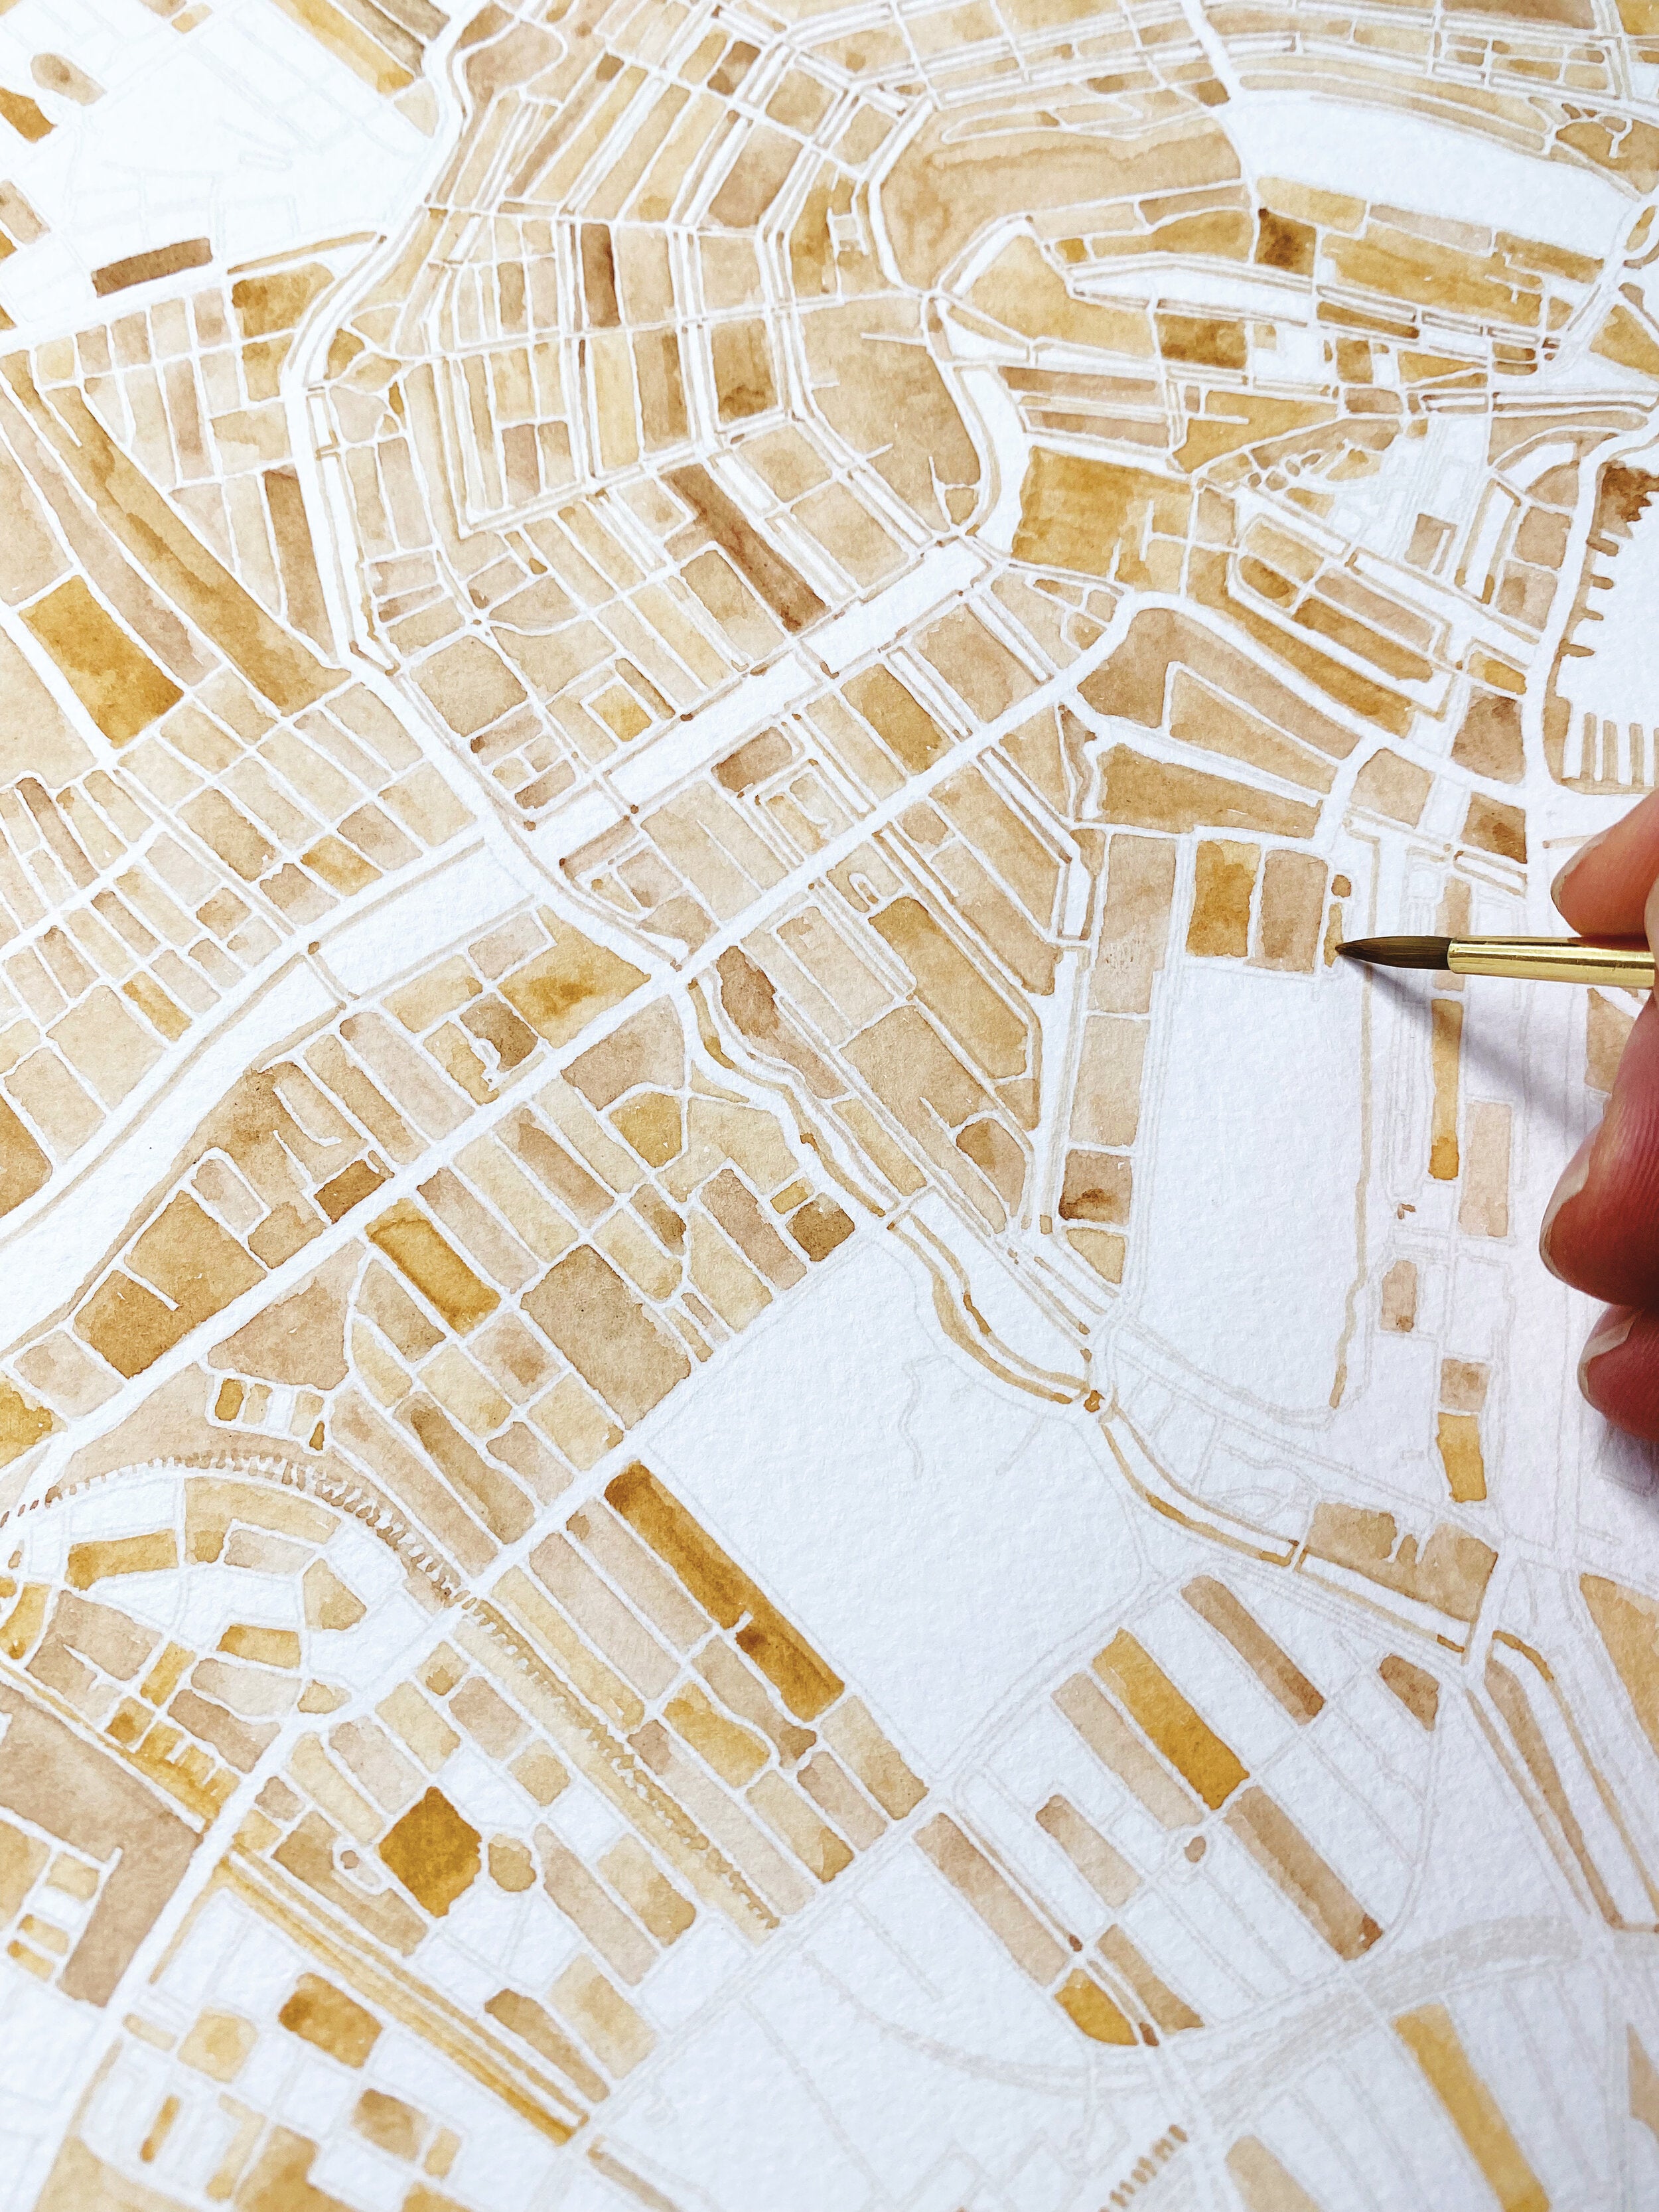 AMSTERDAM Watercolor City Blocks Map: ORIGINAL PAINTING